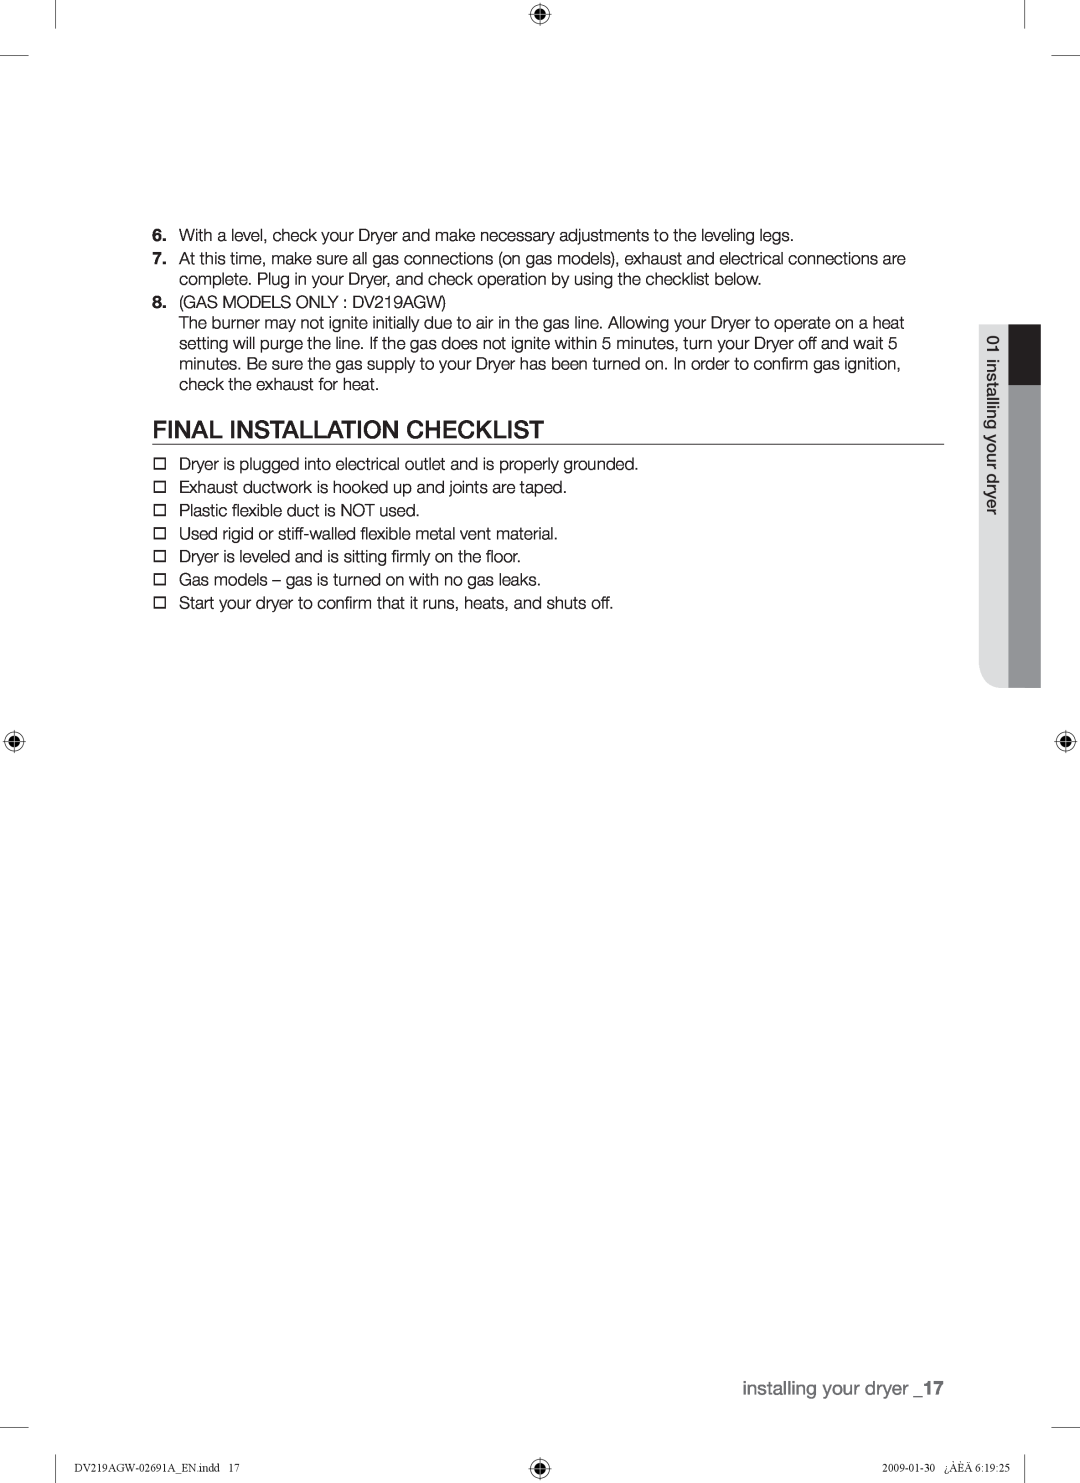 Samsung DV219AG*, DV219AE*, DV219AGW user manual Final Installation Checklist, installing your dryer 